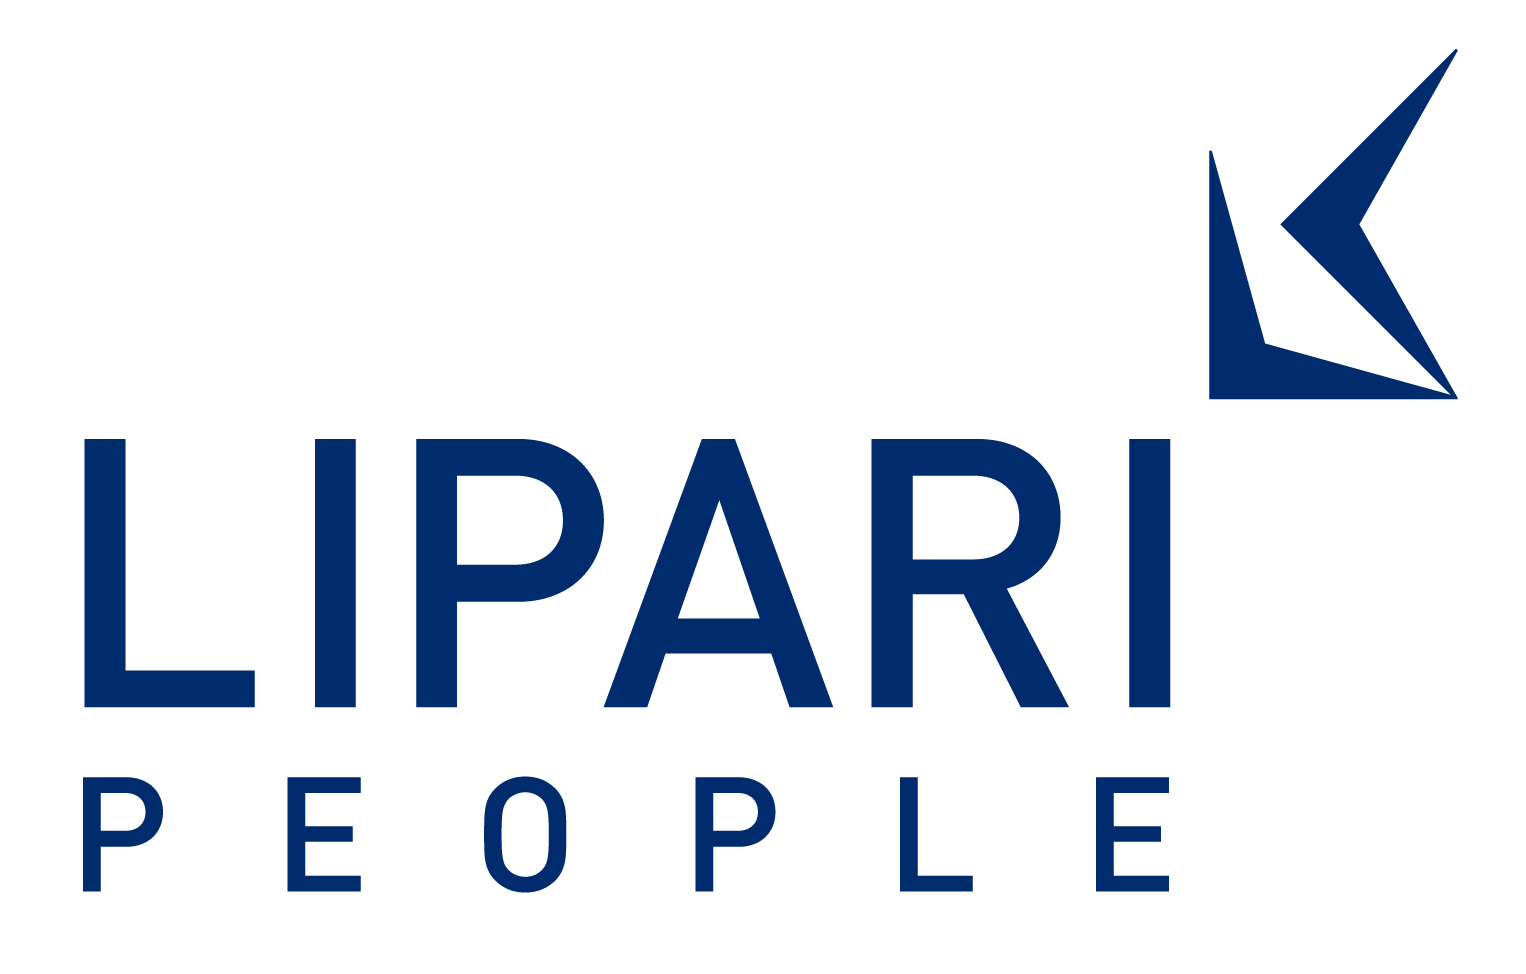 Lipari People